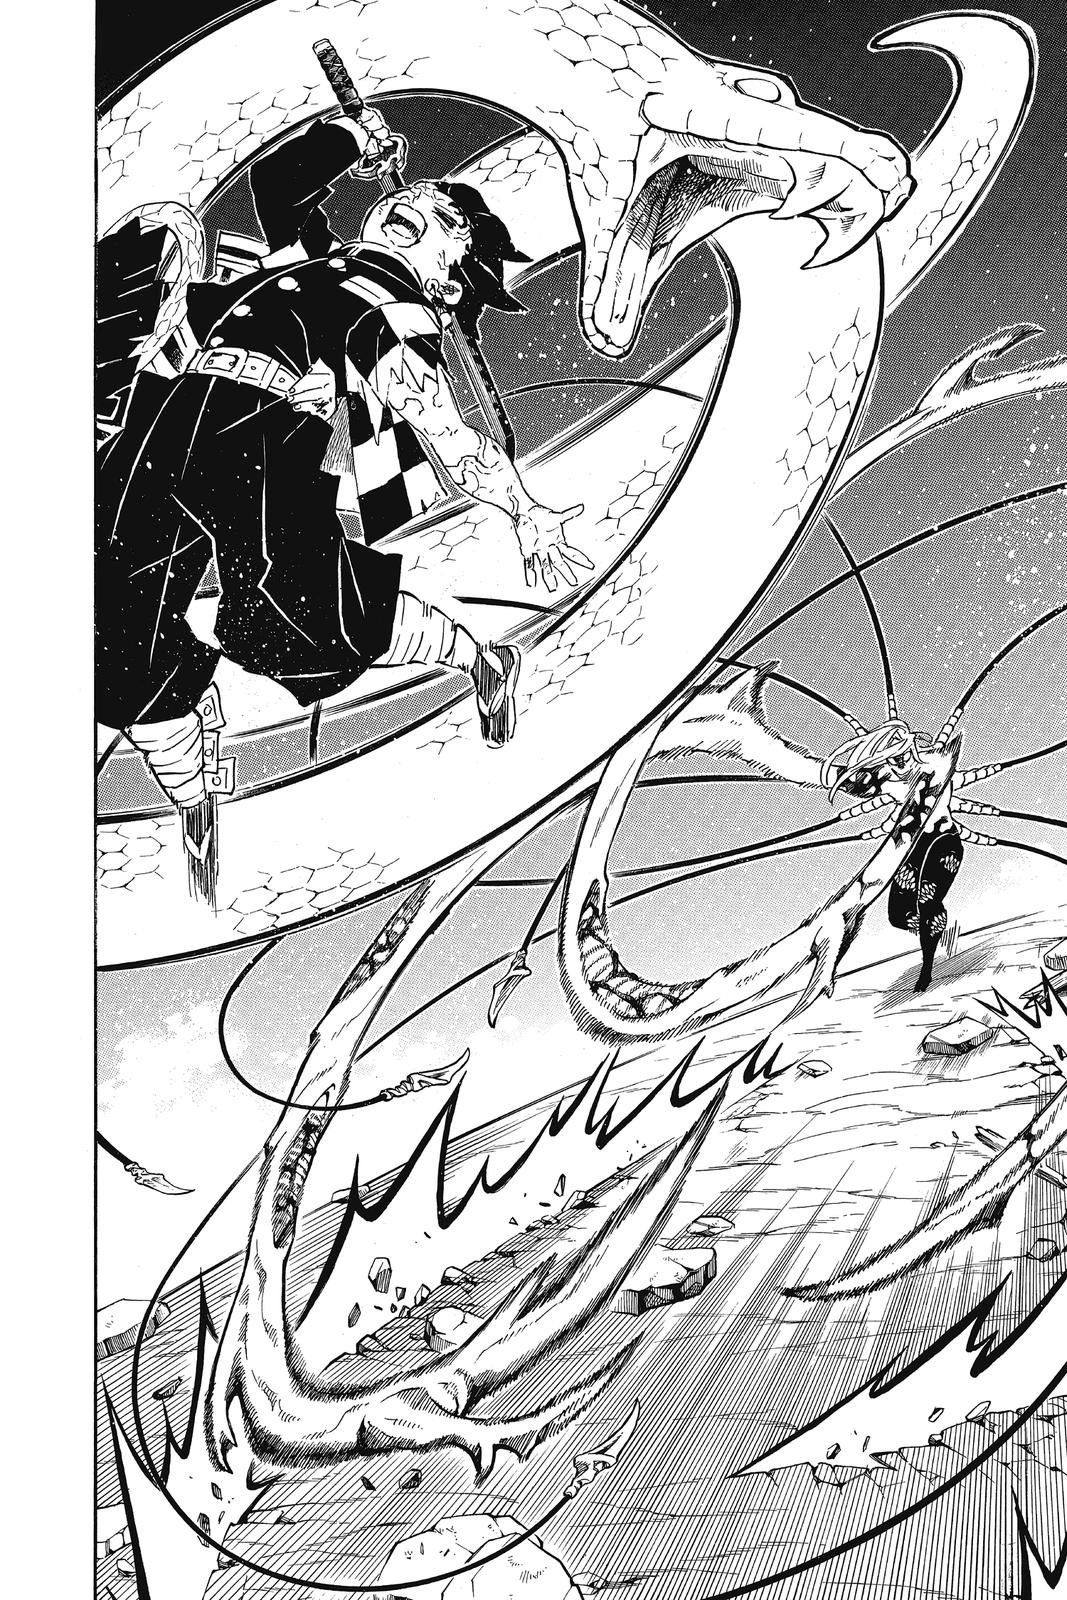 Demon Slayer Manga Manga Chapter - 194 - image 8